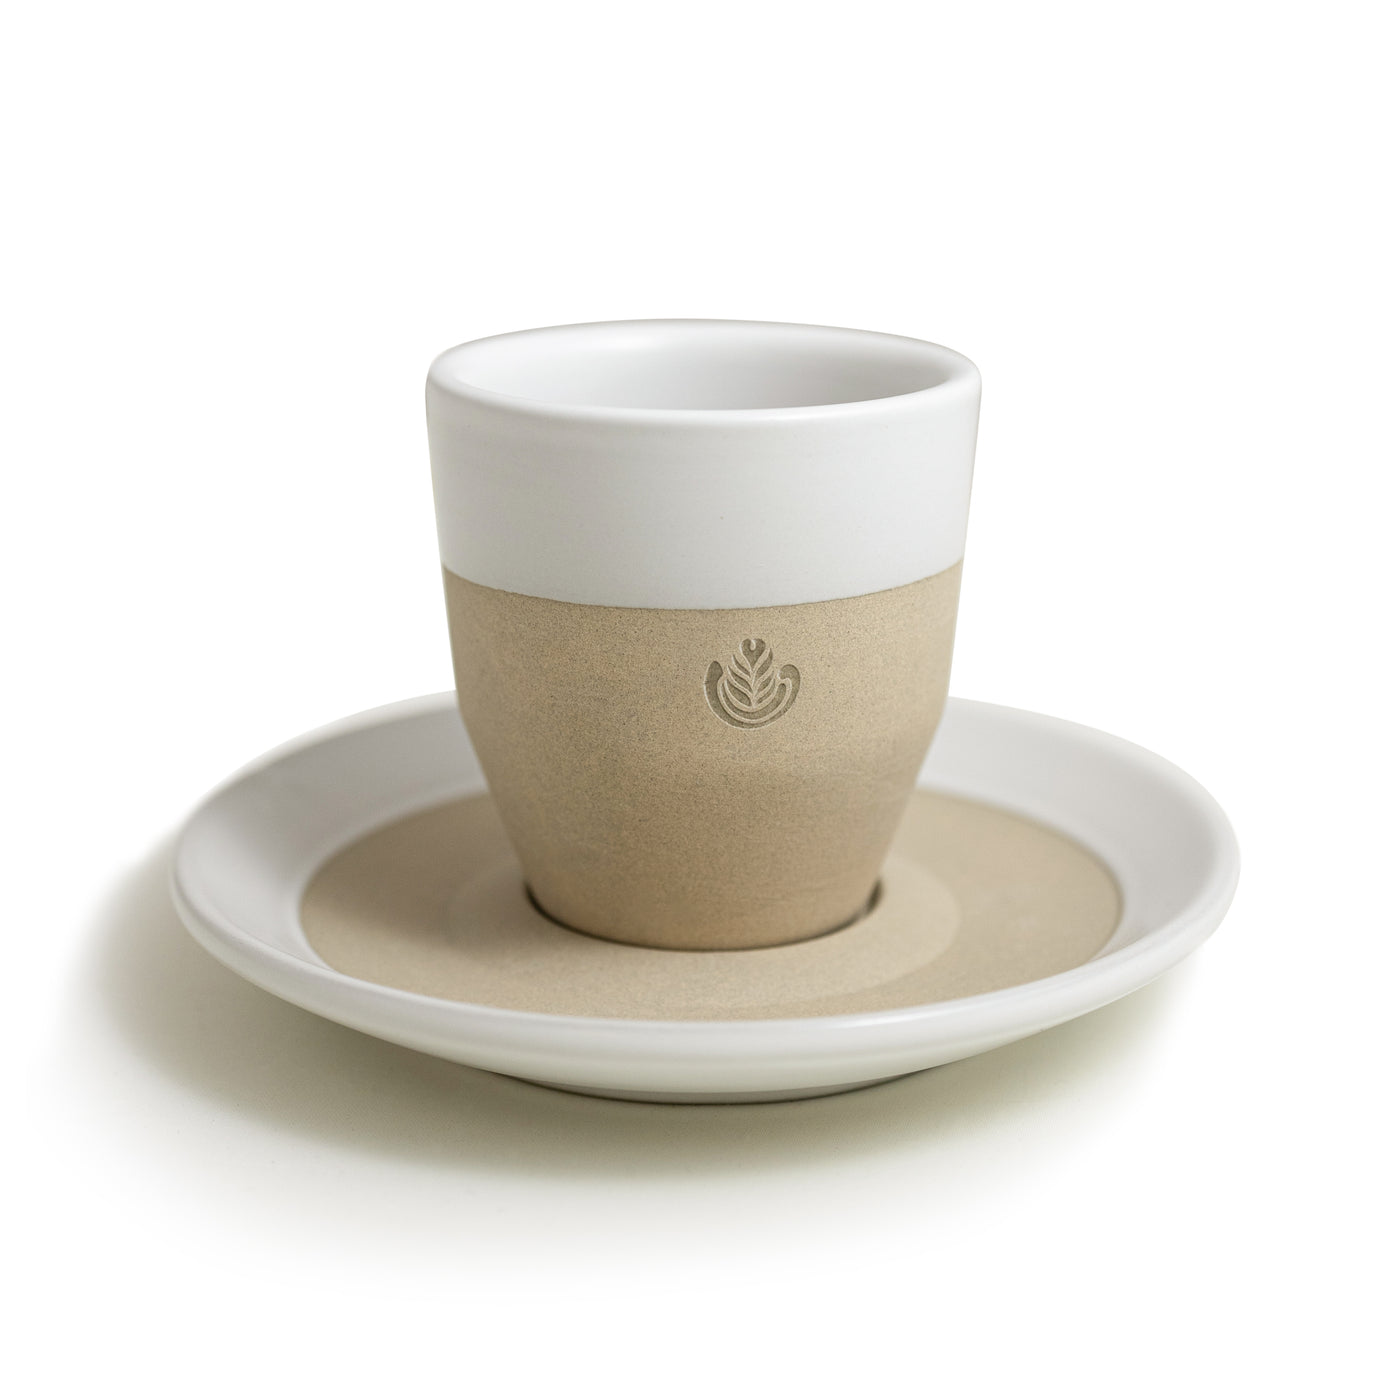 Pico Espresso Cup and Saucer